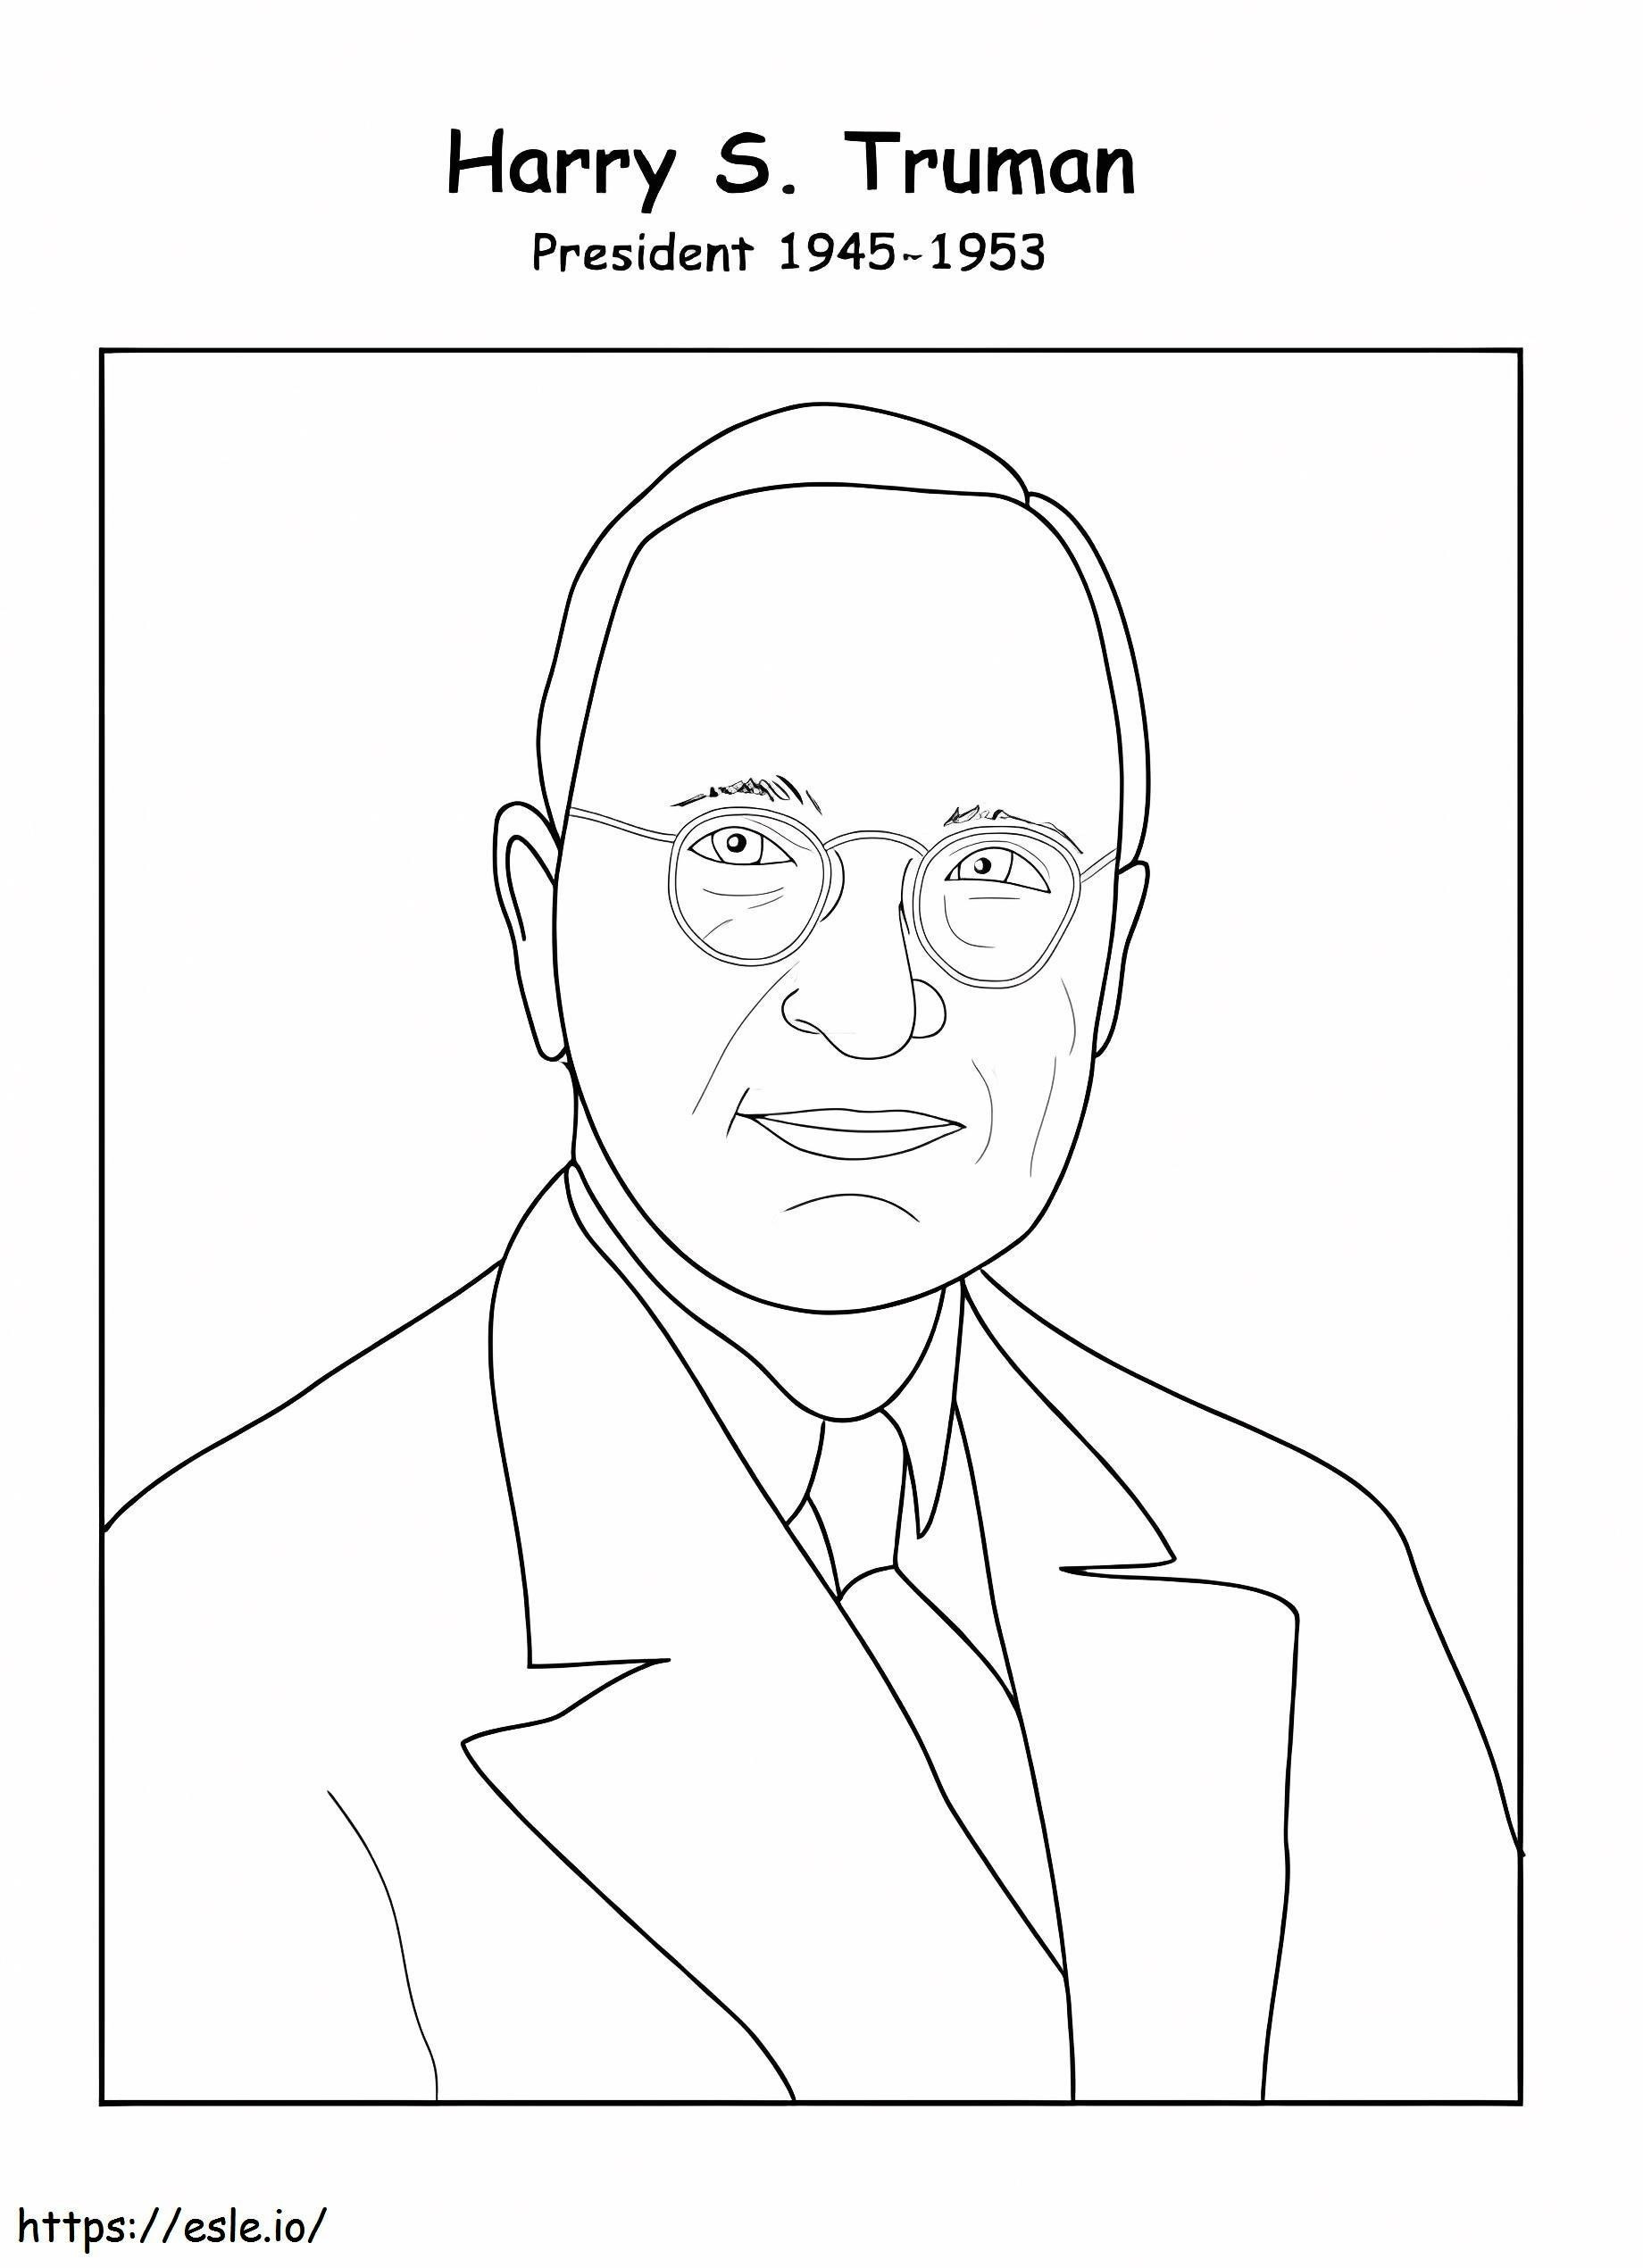 Ücretsiz Yazdırılabilir Harry S. Truman boyama